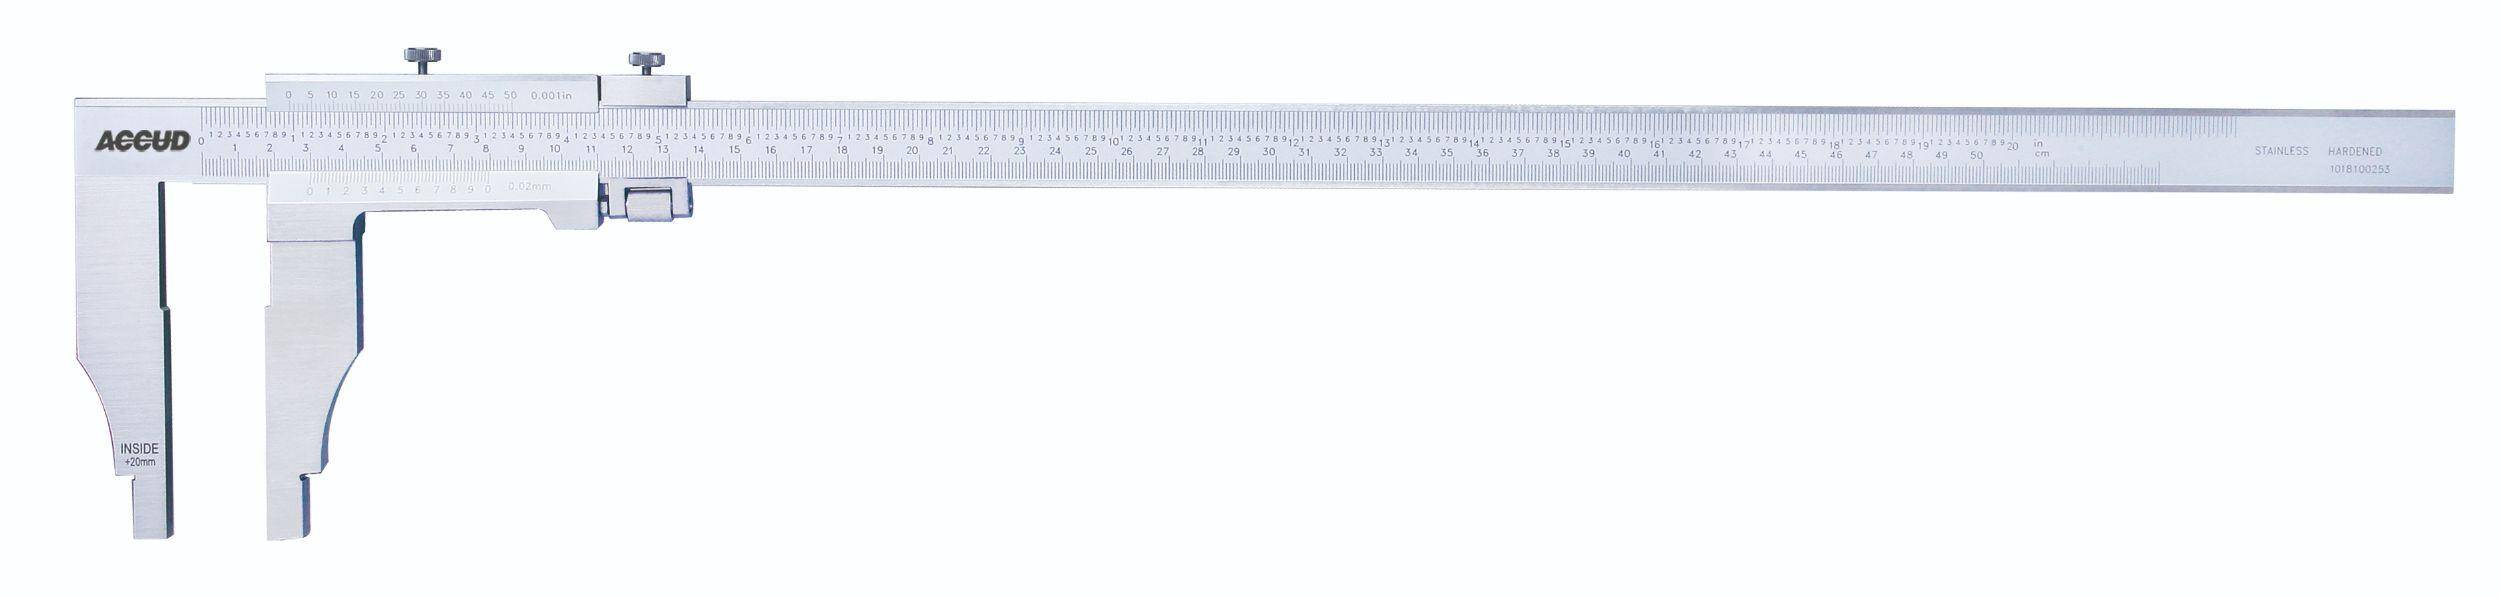 ACCUD suwmiarka analogowa 300/0,05 mm jednostronna długość szczęk 150 mm 128-012-52